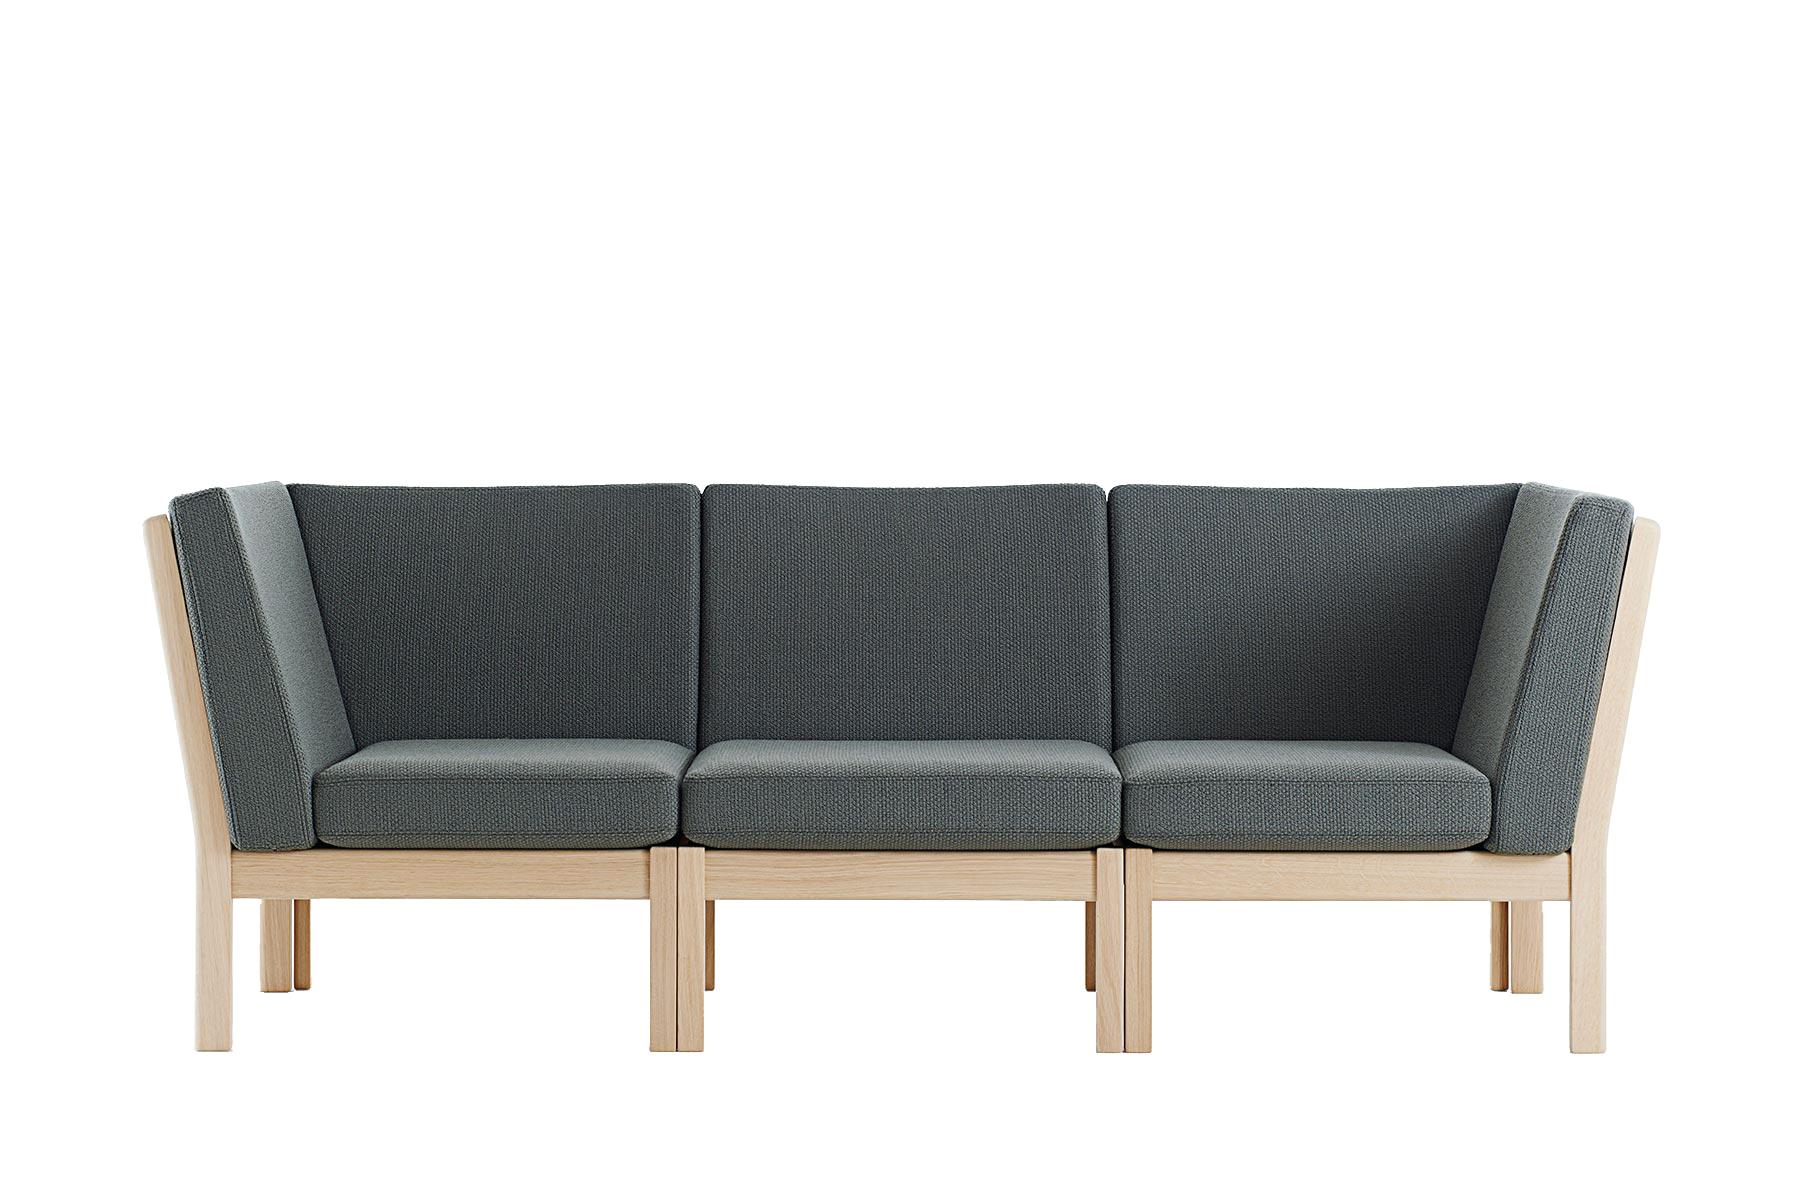 Unglazed Hans Wegner GE-280 Modular Sofa For Sale